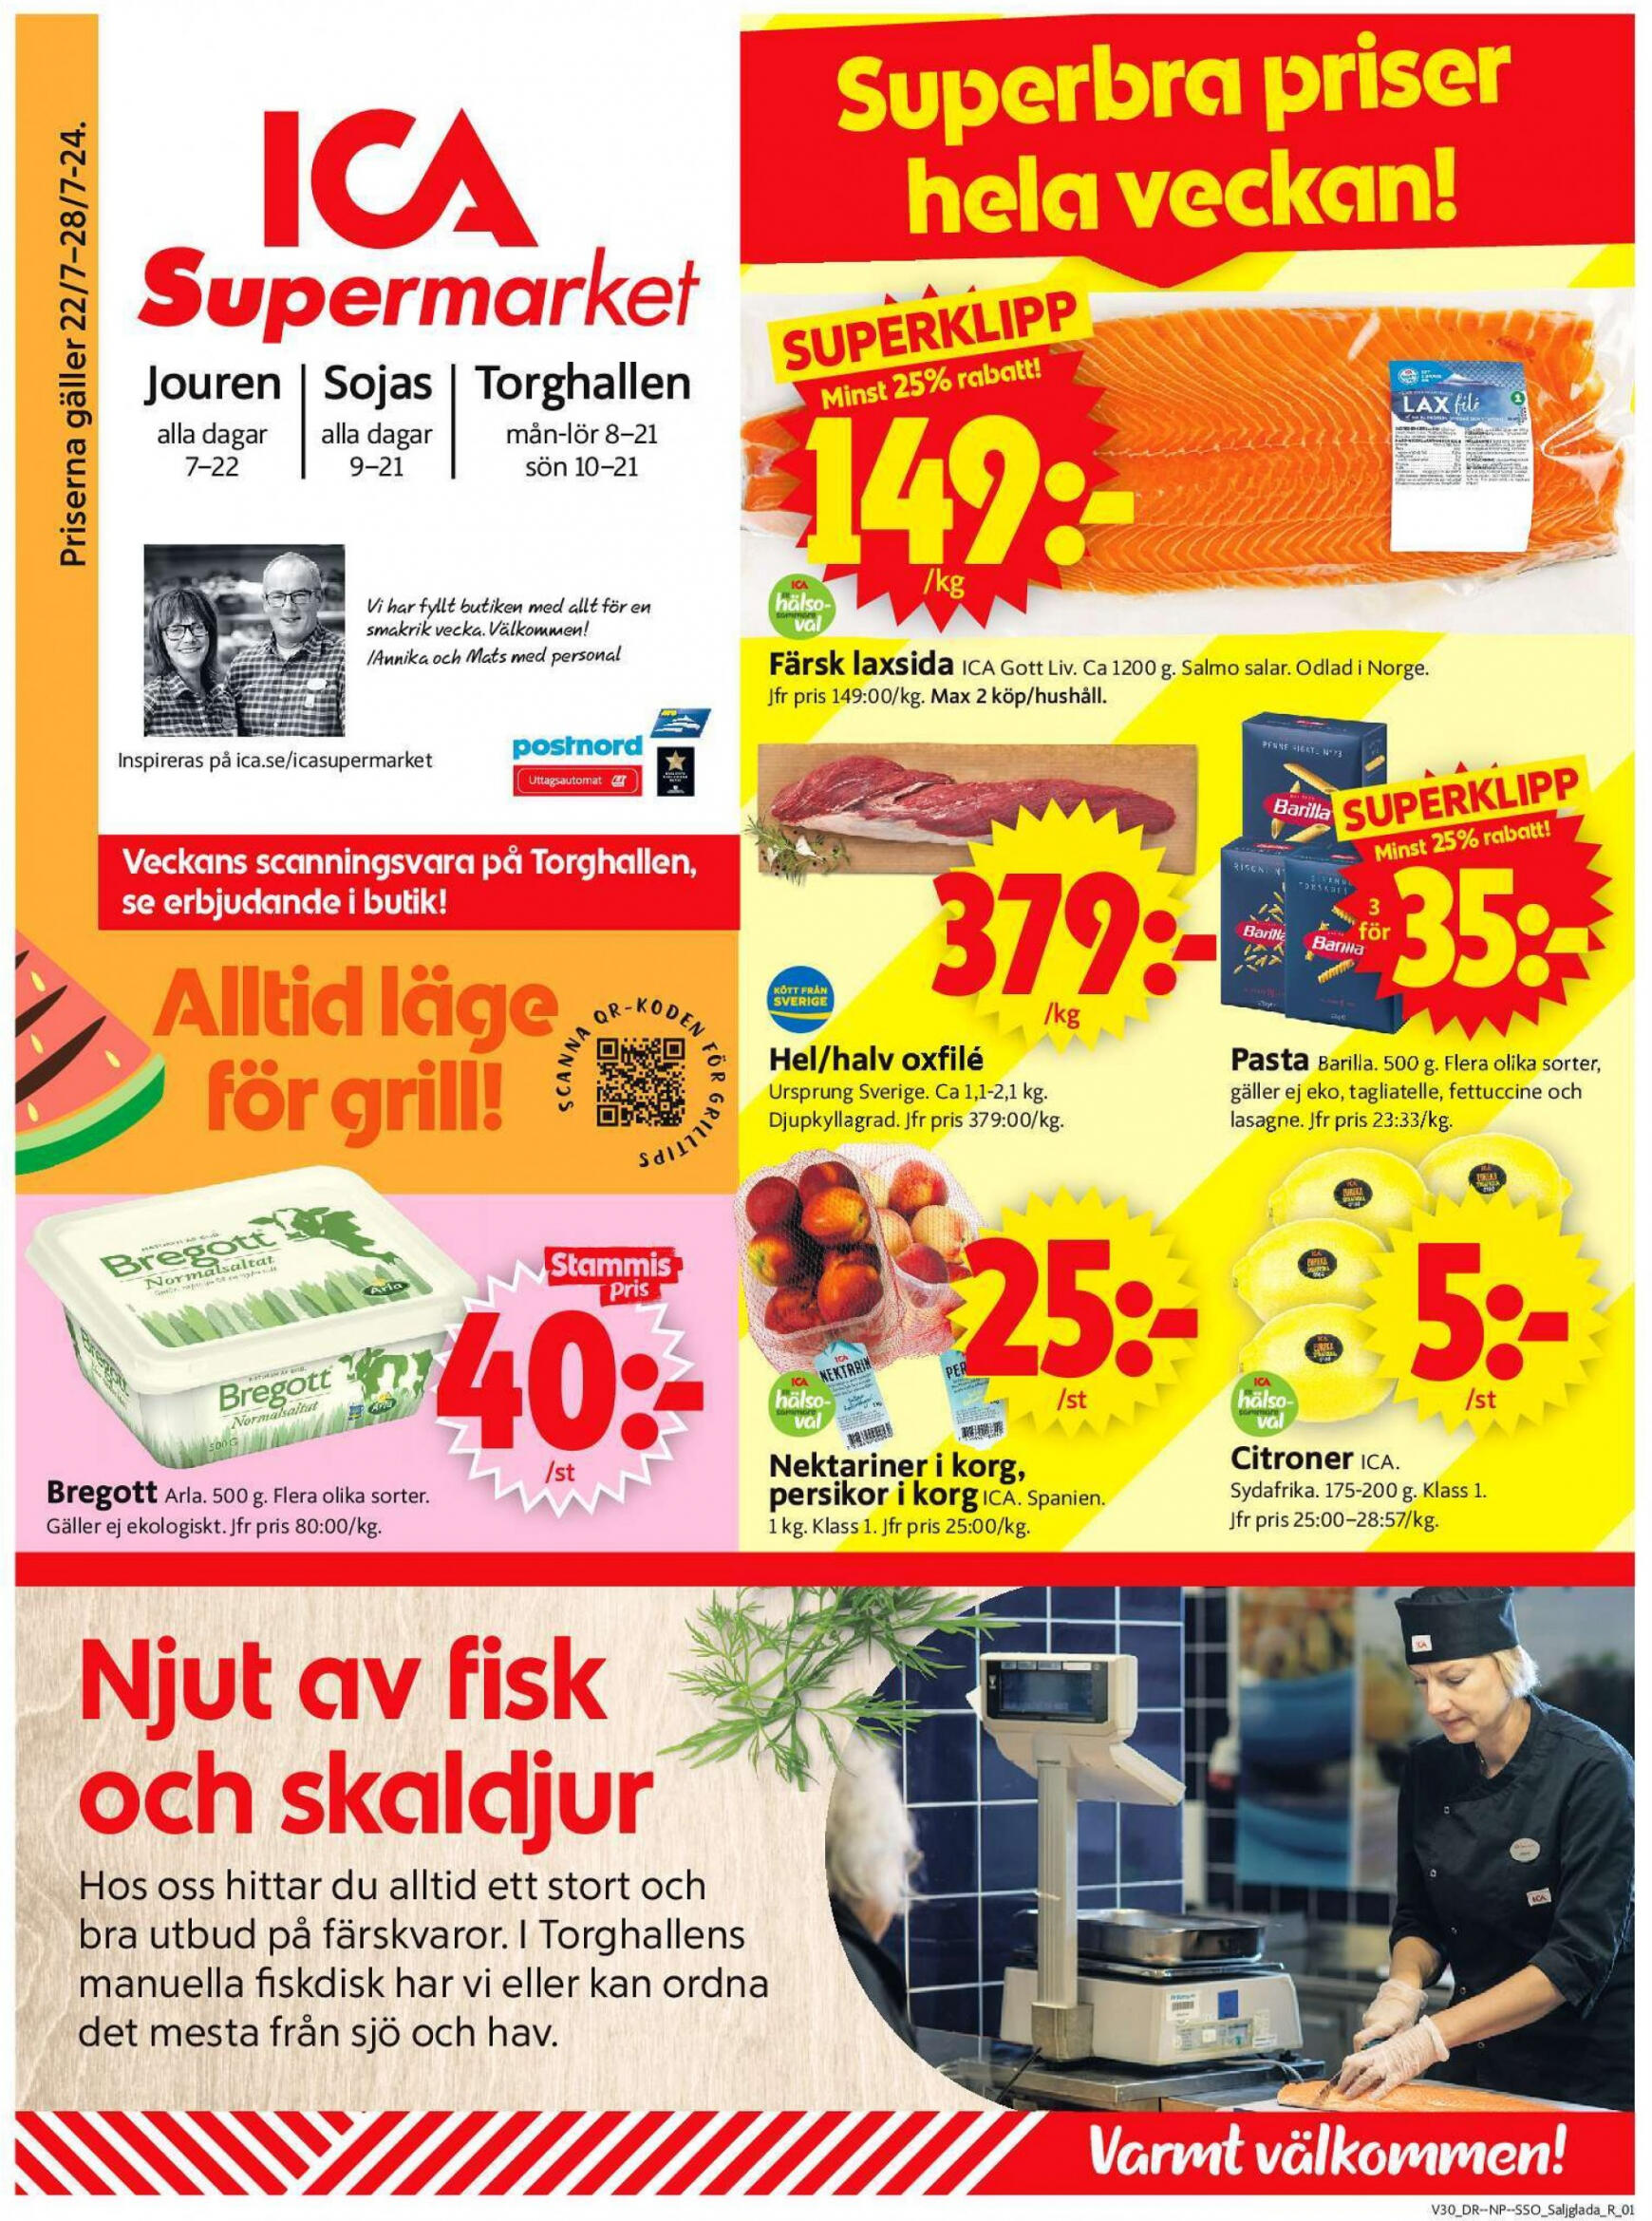 ica-supermarket - Flyer ICA Supermarket current 22.07. - 28.07.